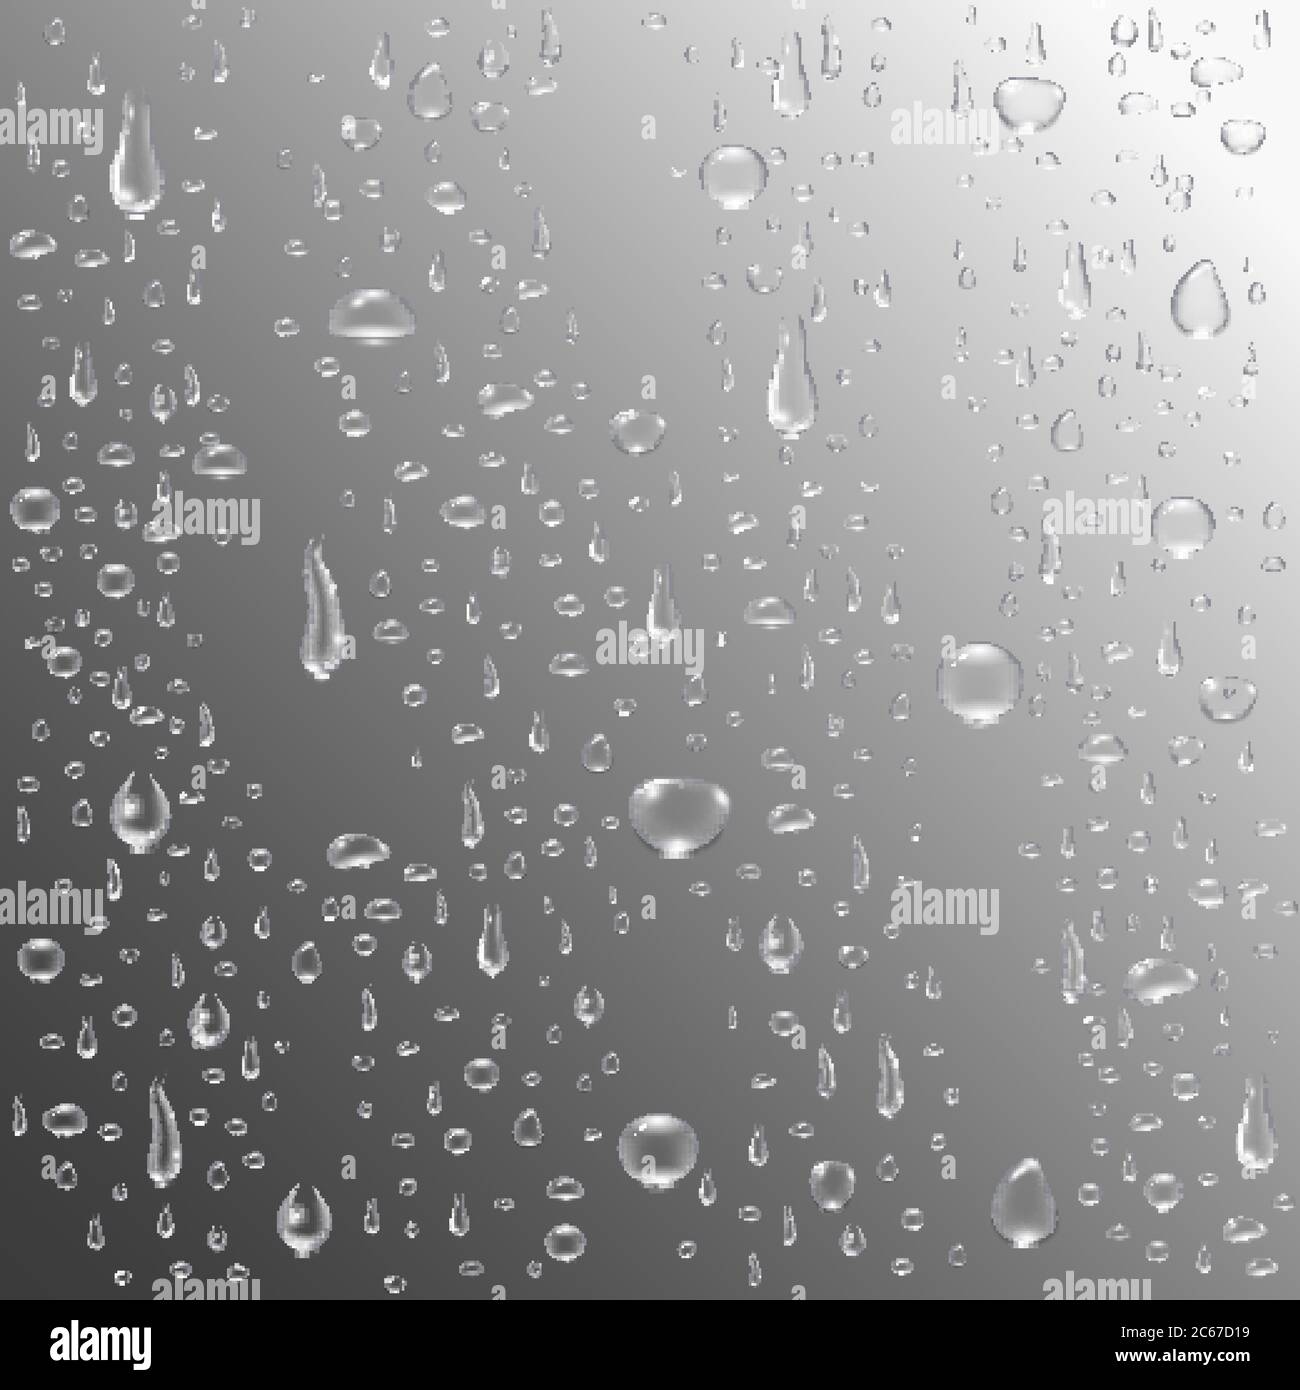 Wasser oder Regen fällt Hintergrund. Realistische Tropfen. Klare Wasserblasen auf dem Fensterglas. Tropfkondensationskonzept. Vektorgrafik. Stock Vektor